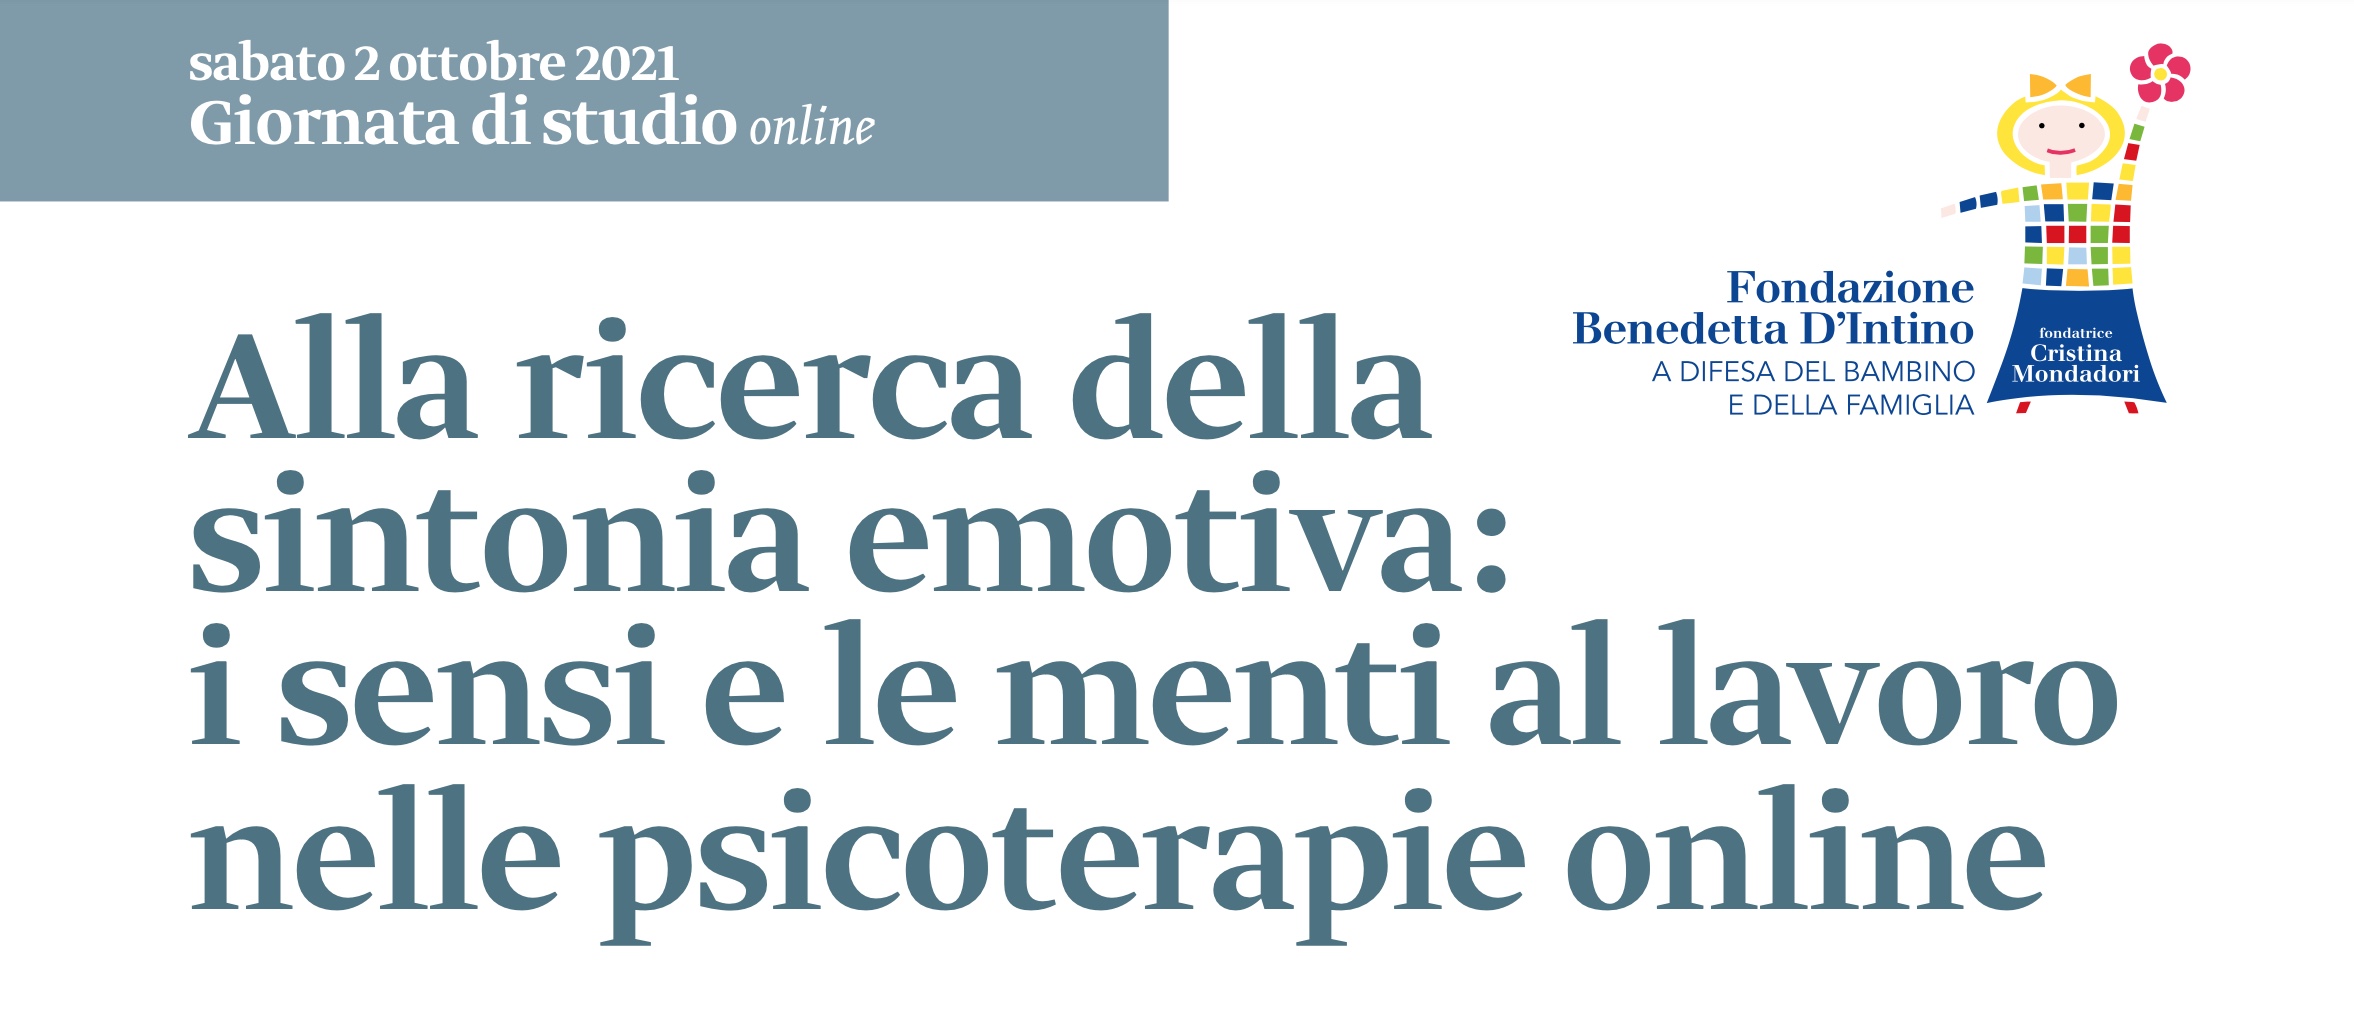 Titolo Comvegno Psicoterapia Milano 2 ottobre 2021